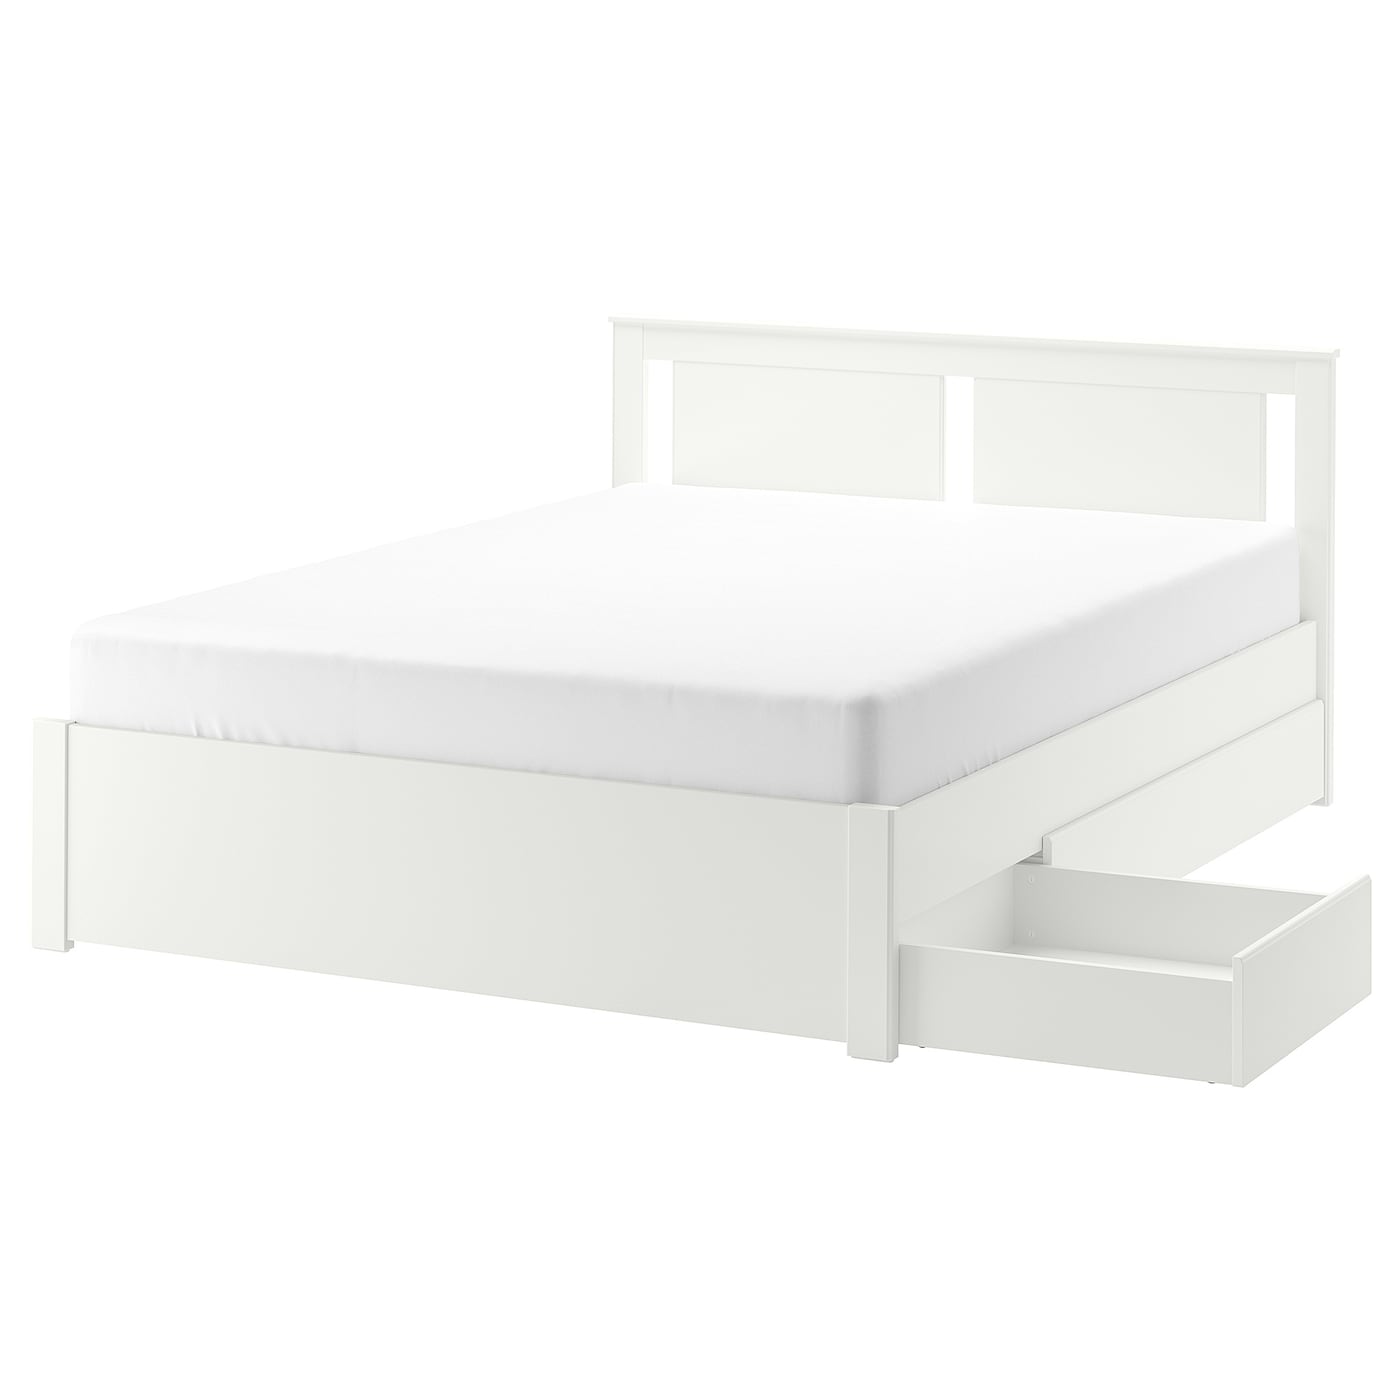 Основание двуспальной кровати - IKEA SONGESAND/LINDBÅDEN/LINDBADEN, 200х140 см, белый, СОНГЕСАНД/ЛИНДБАДЕН ИКЕА